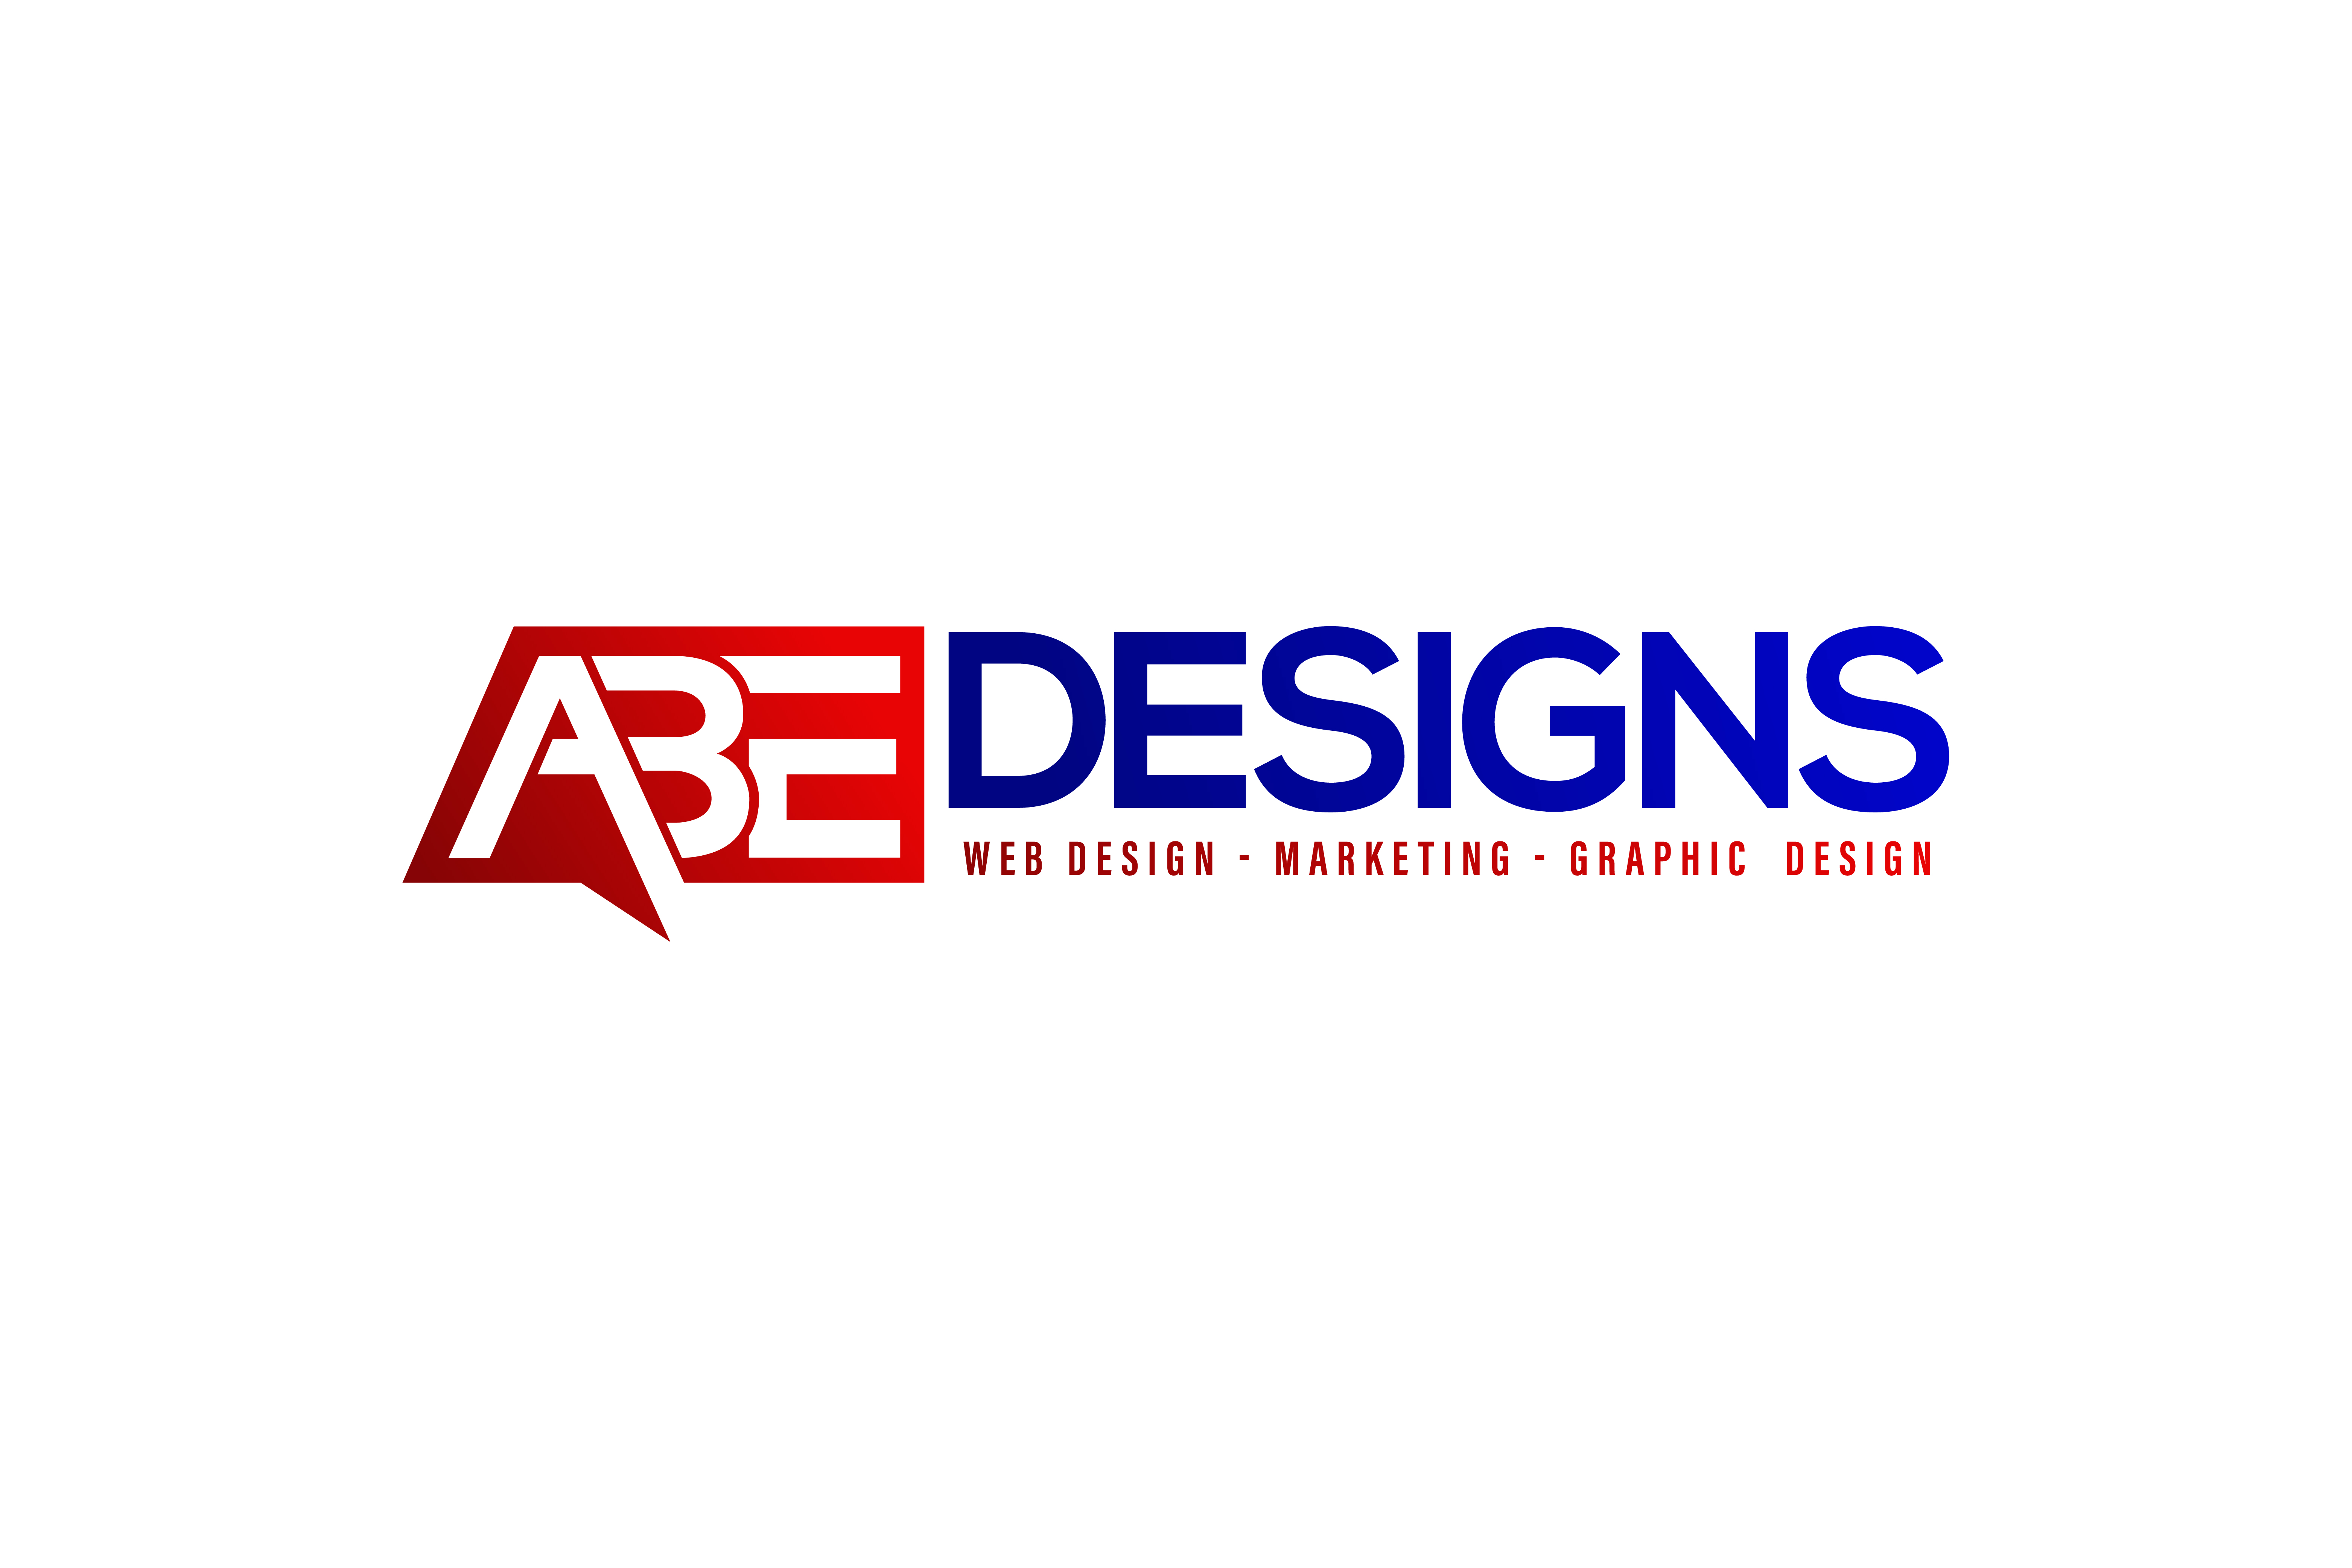 Abe Designs